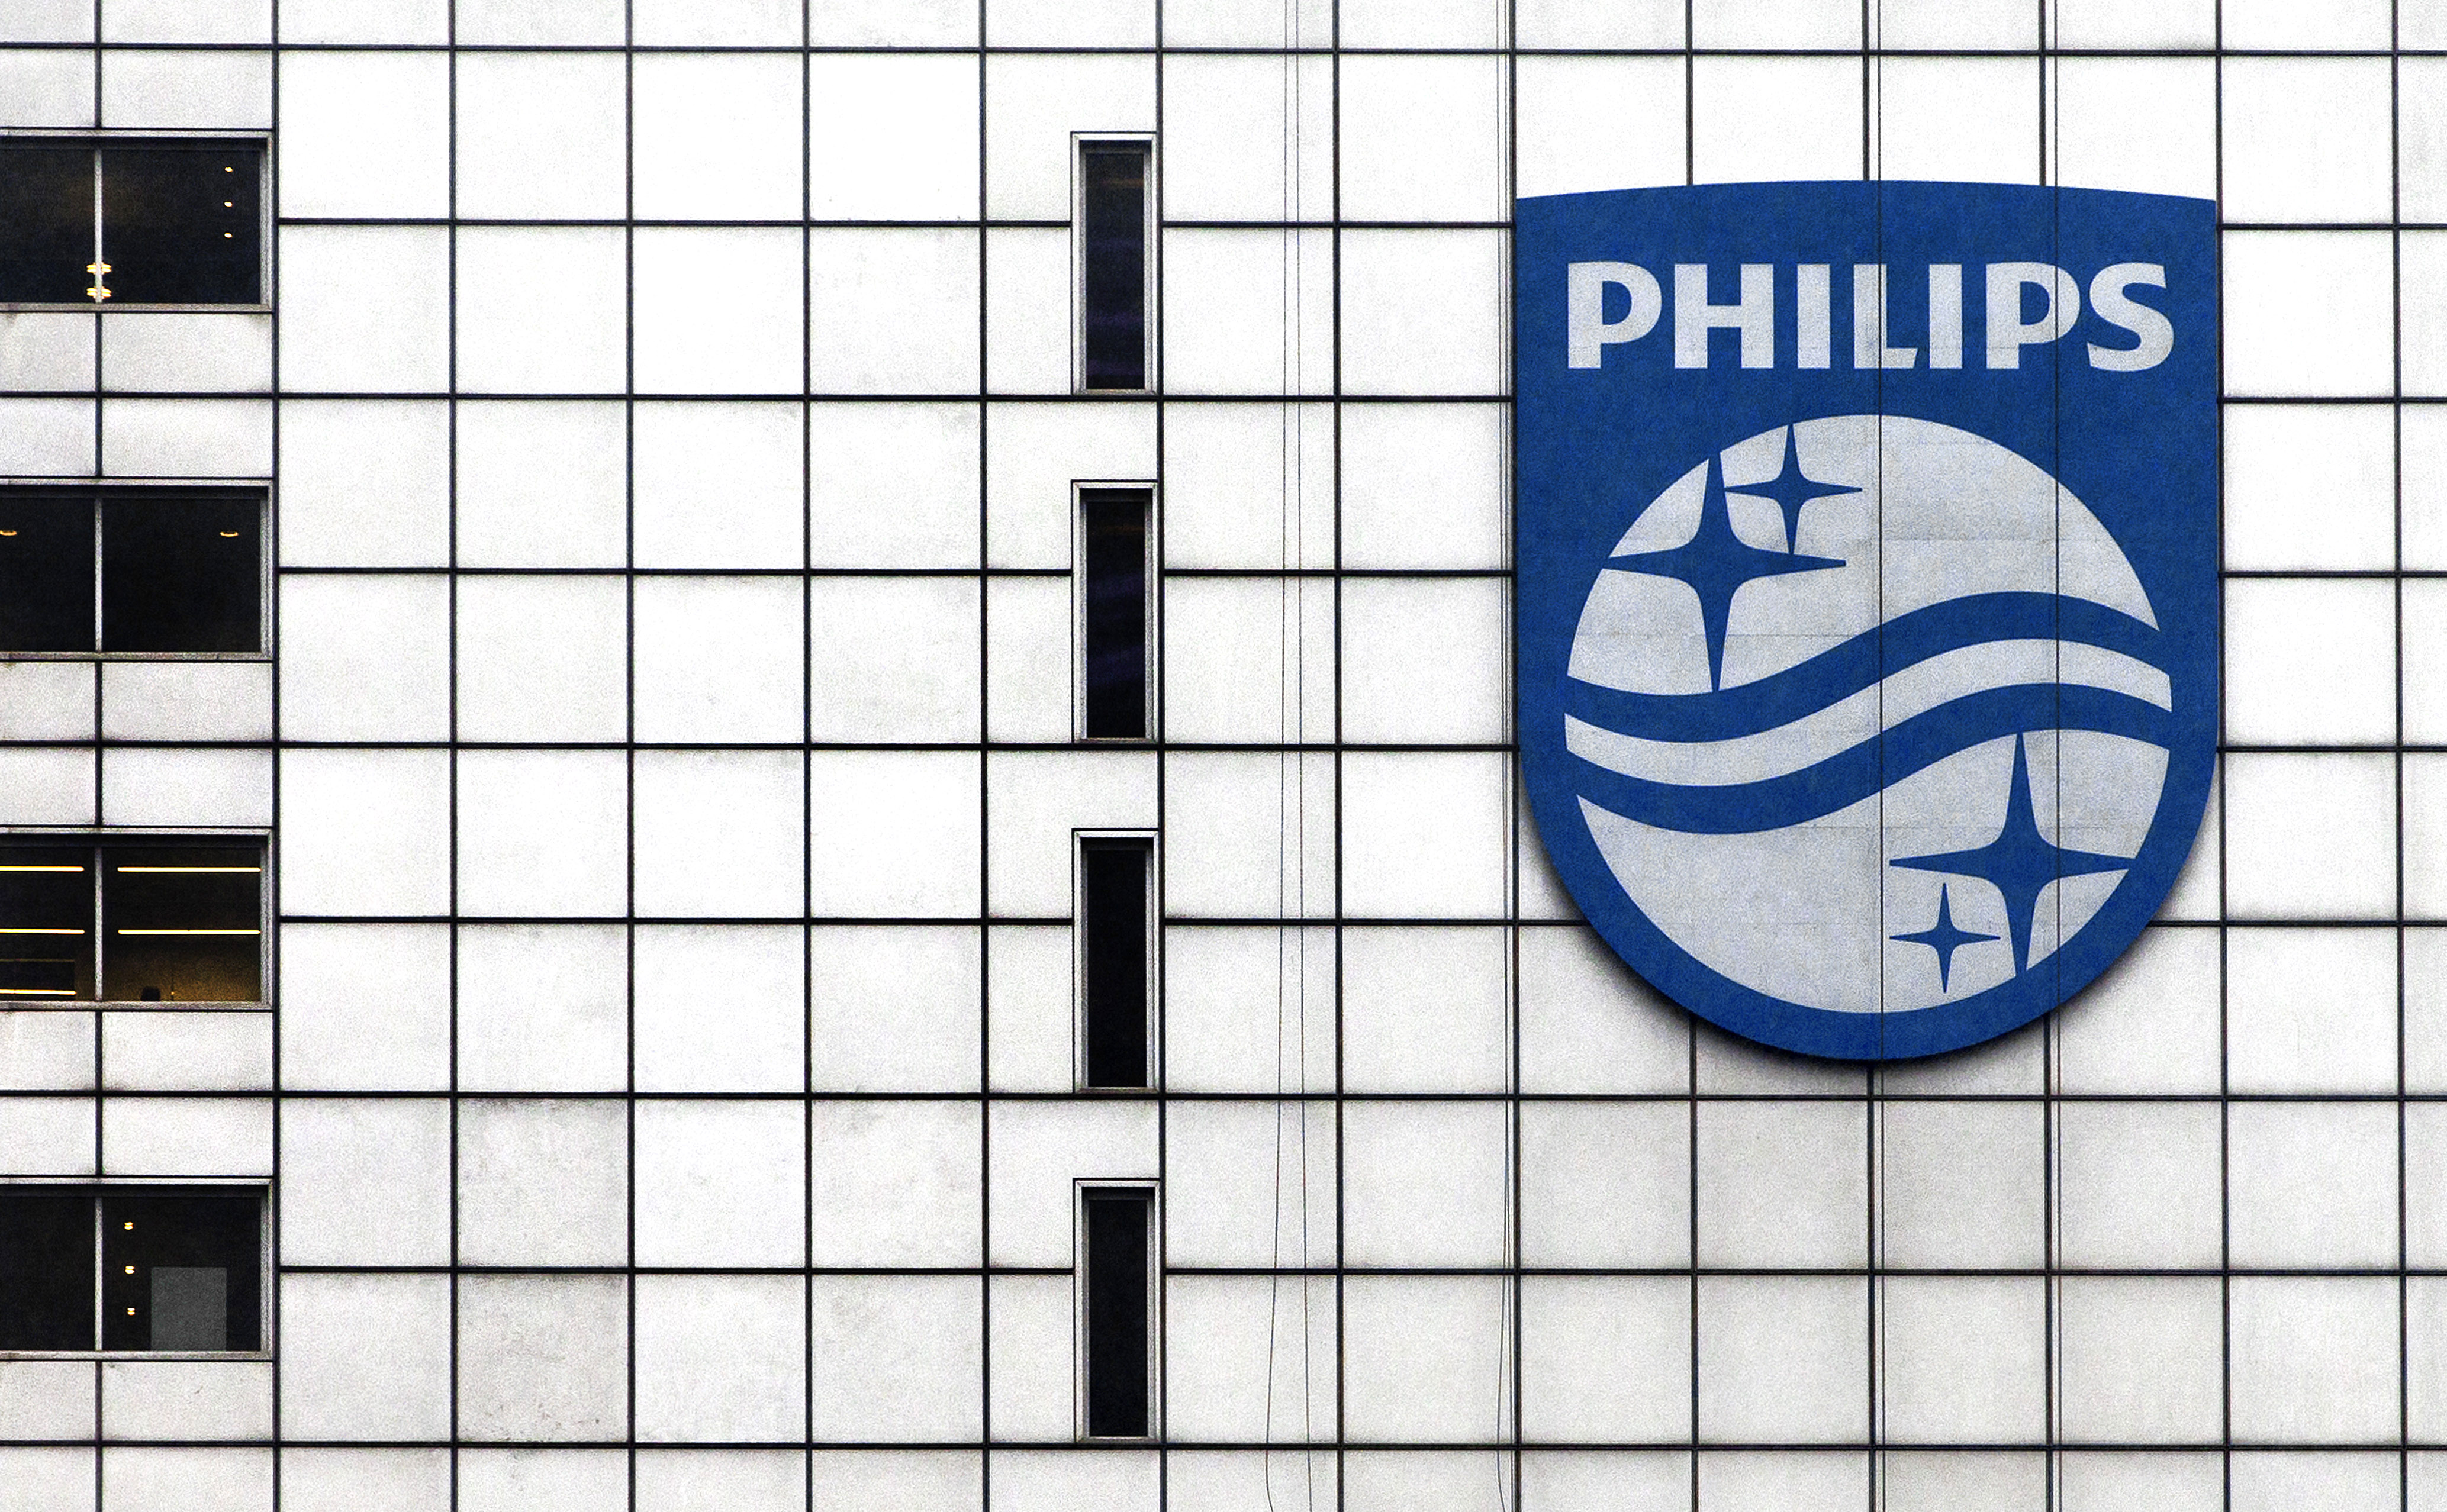 2013-11-14 00:00:00 AMSTERDAM - Het nieuwe logo van Philips is geplaatst op het hoofdkantoor. Een gemoderniseerd versie en een nieuwe slogan moeten het getransformeerde Philips de komende jaren verder op de kaart zetten. ANP SANDER KONING